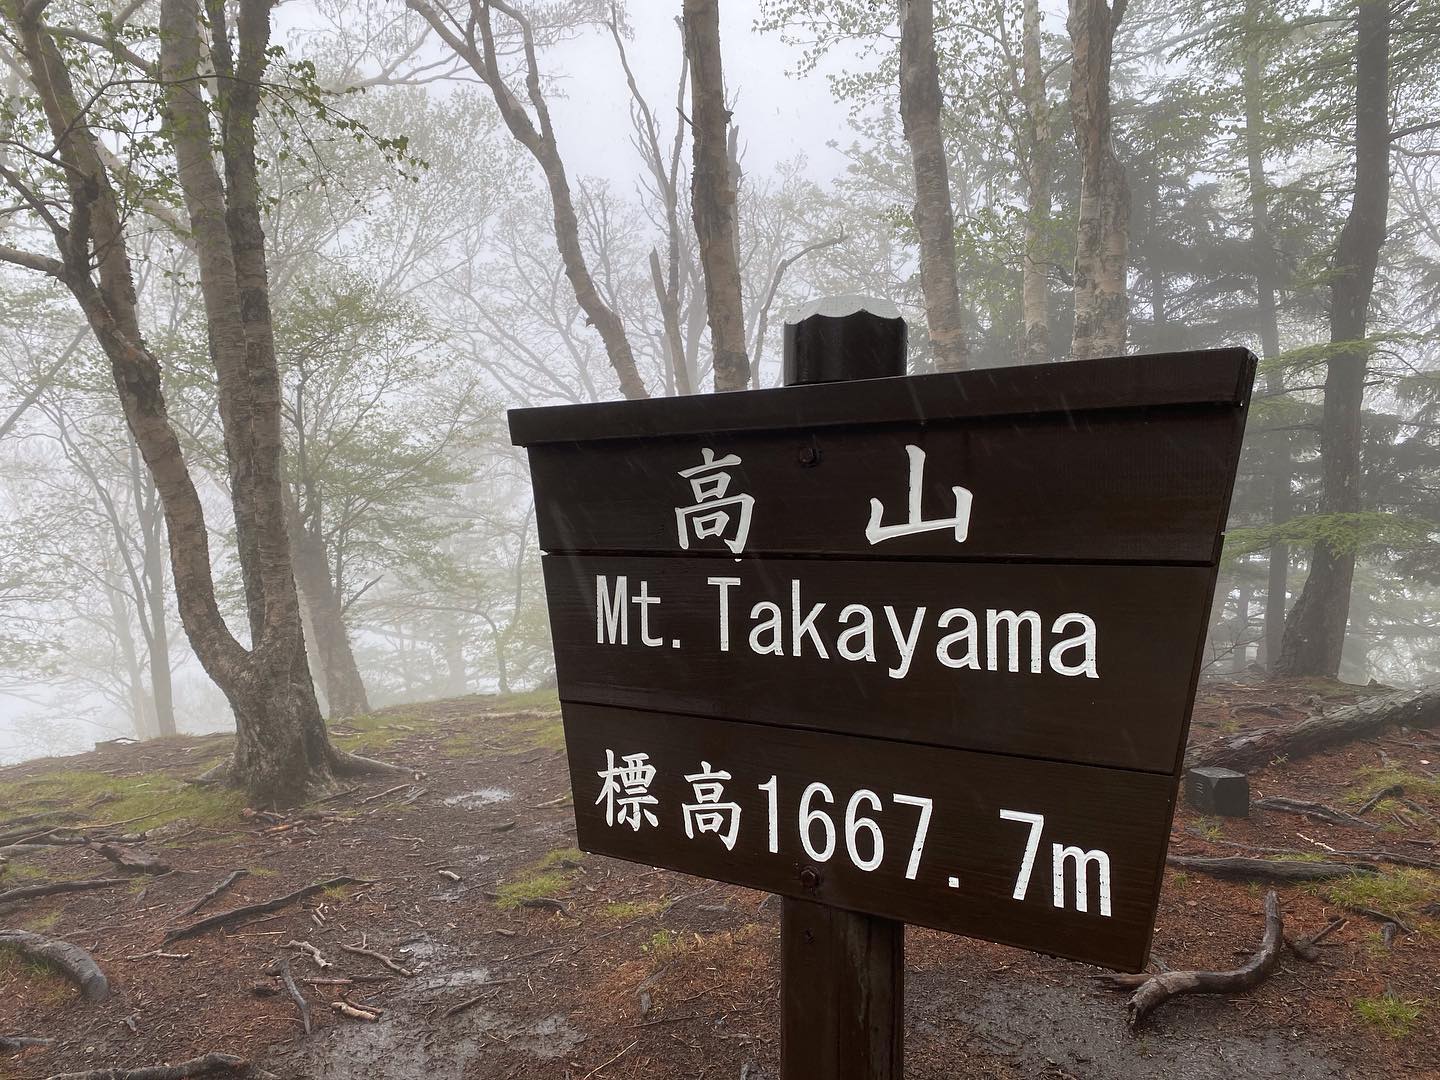 yama楽ツアーの下見をかね日光、高山へ行ってきました。